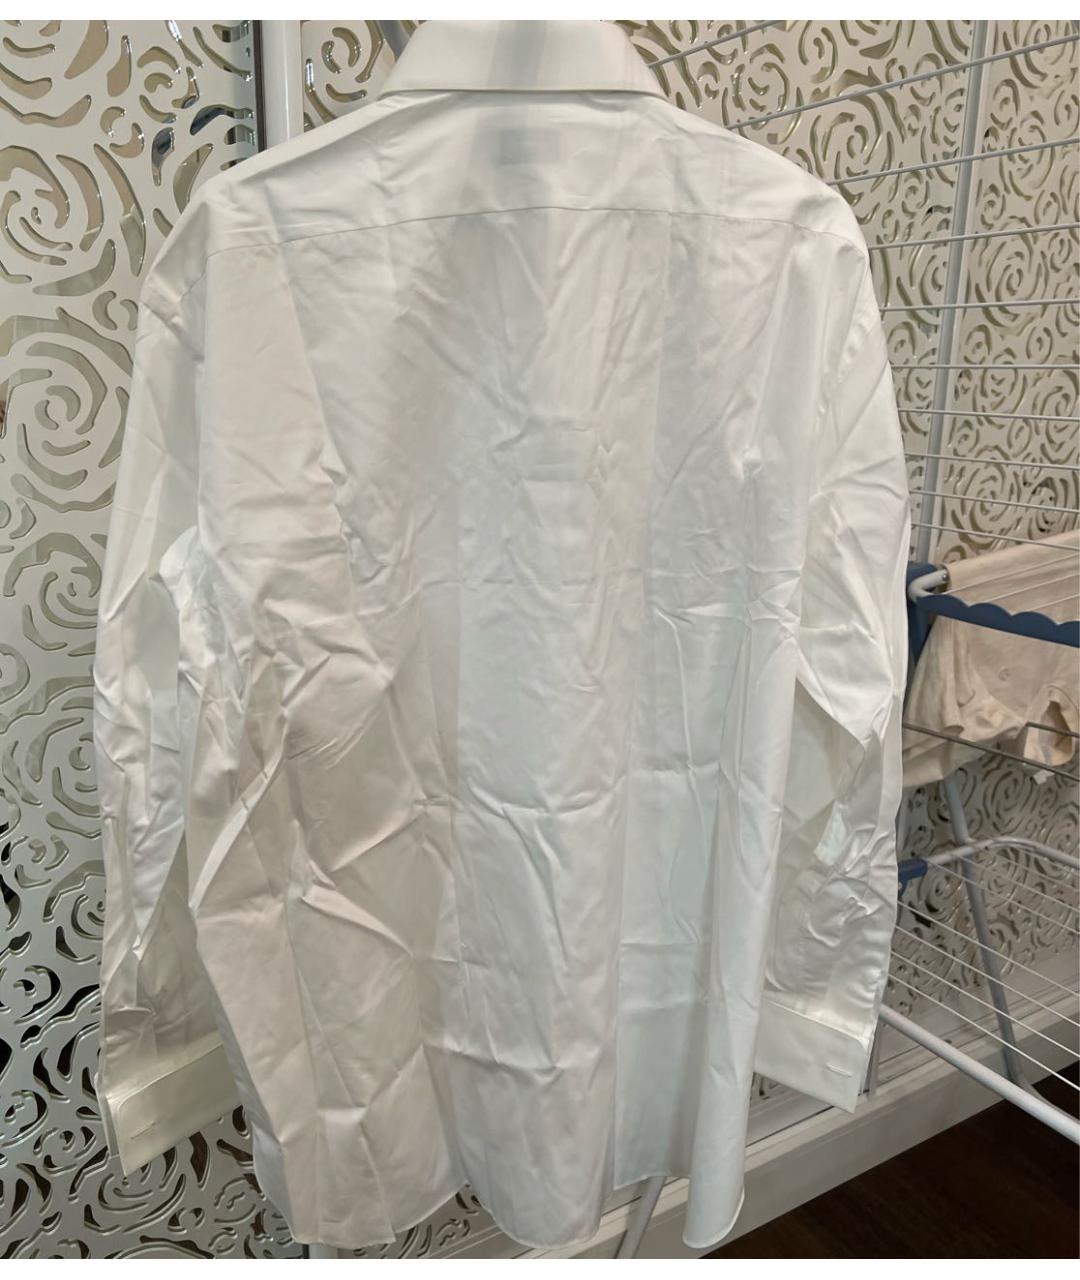 BRIONI Белая хлопковая классическая рубашка, фото 3